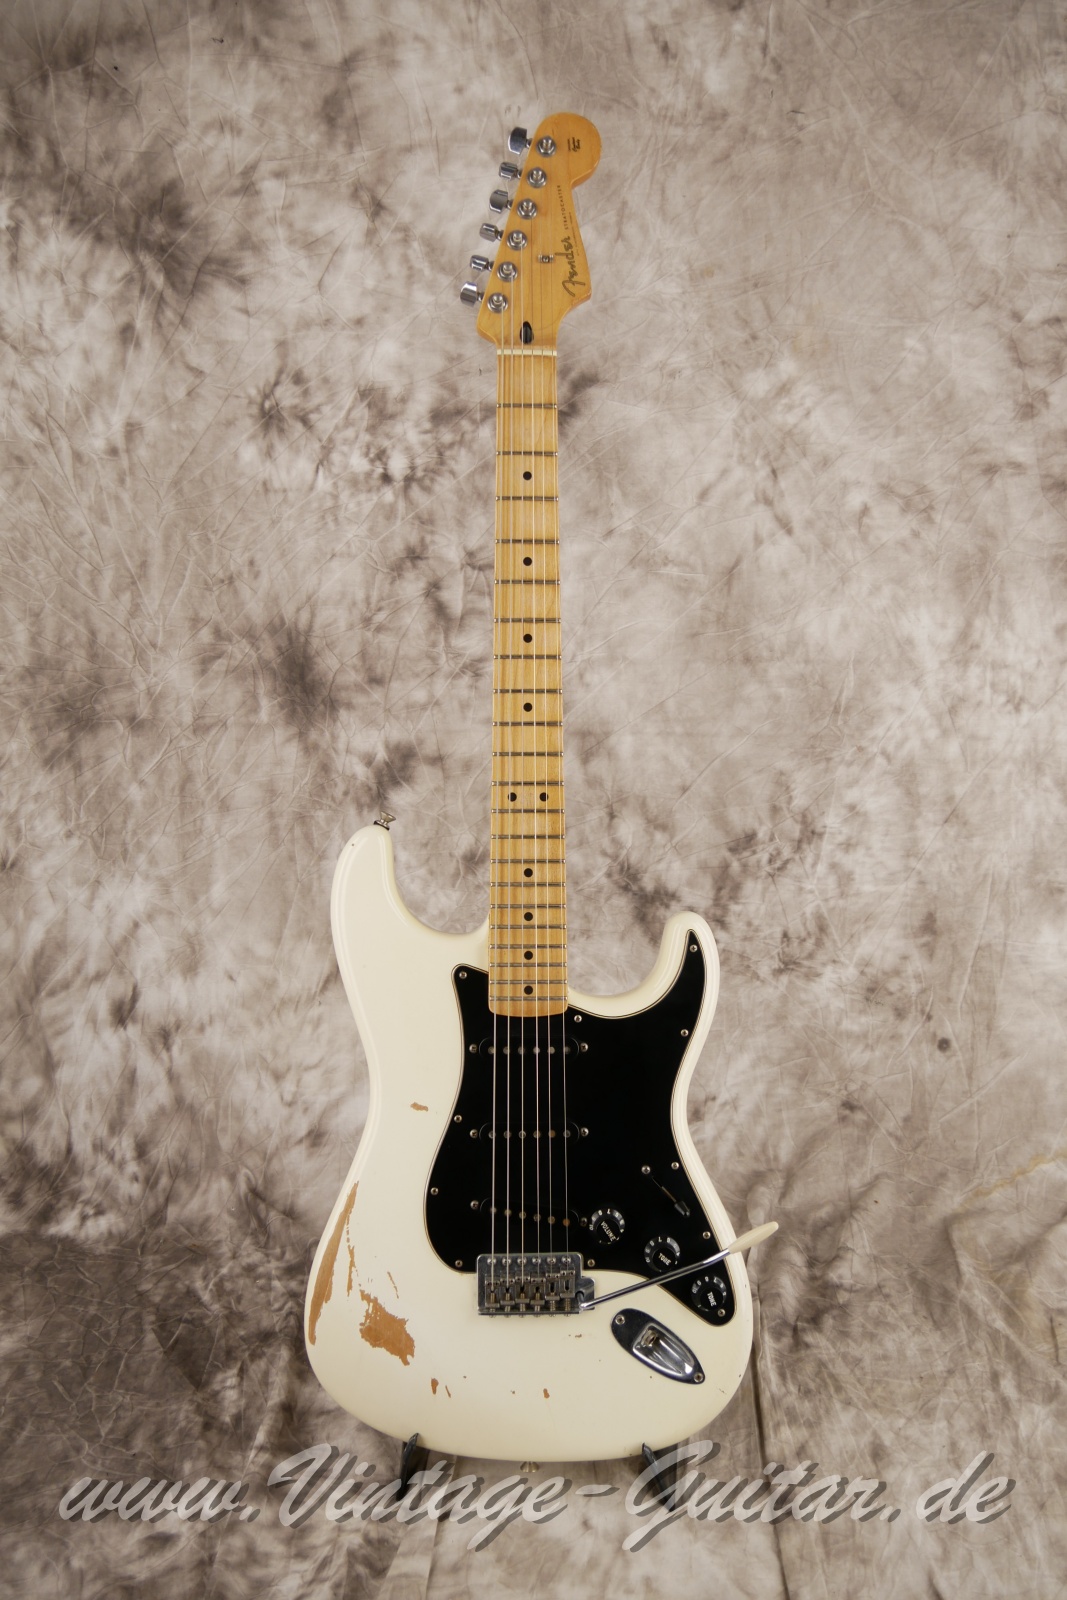 Fender-Stratocaster-roadworn-player-series-60s-reissue-2011-olympic-white-001.jpg